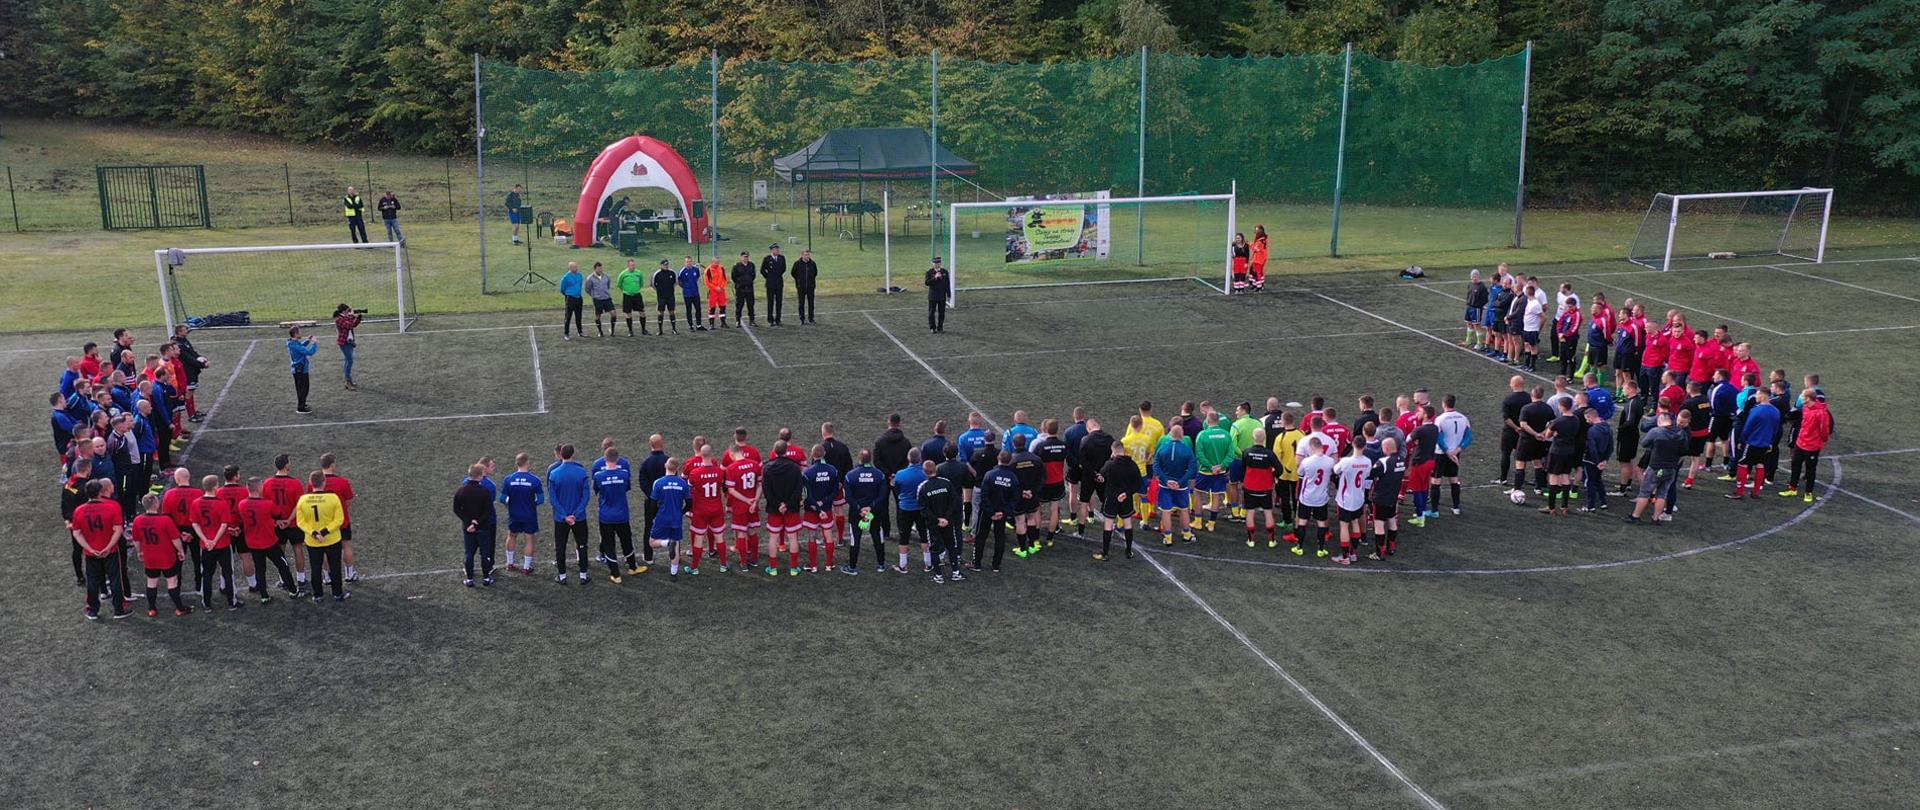 Turniej piłkarski w Drawsku Pomorskim. Zdjęcie grupowe.